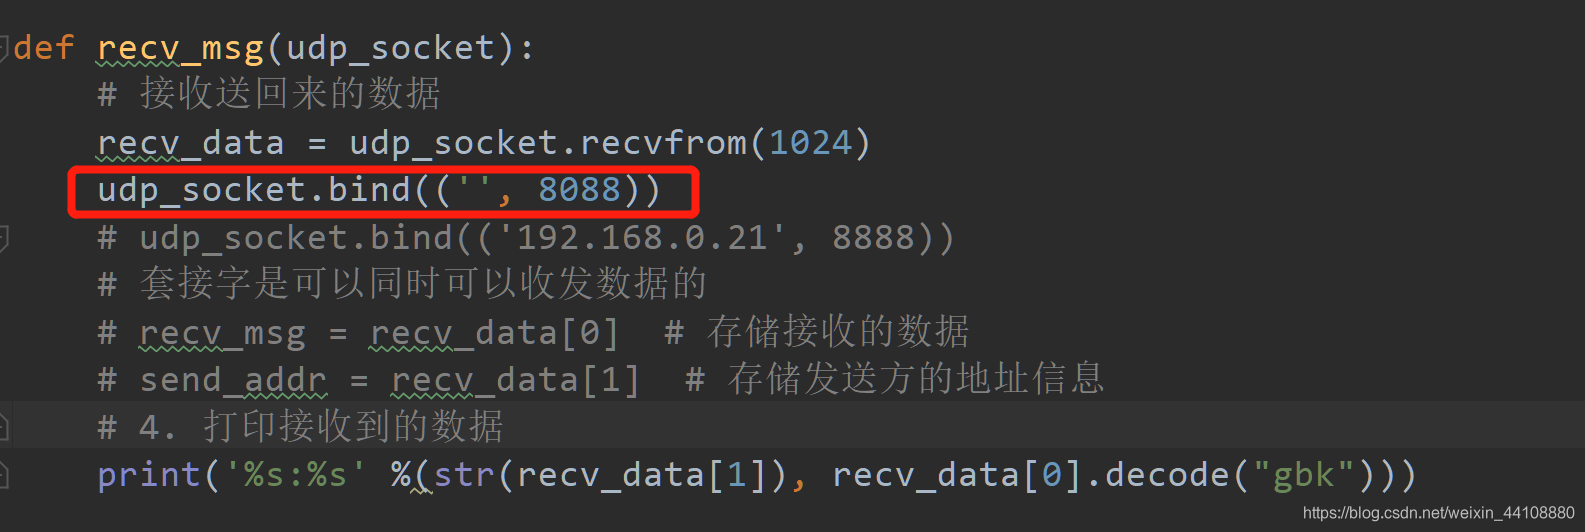 此处将绑定端口的代码放入了函数recv_msg中